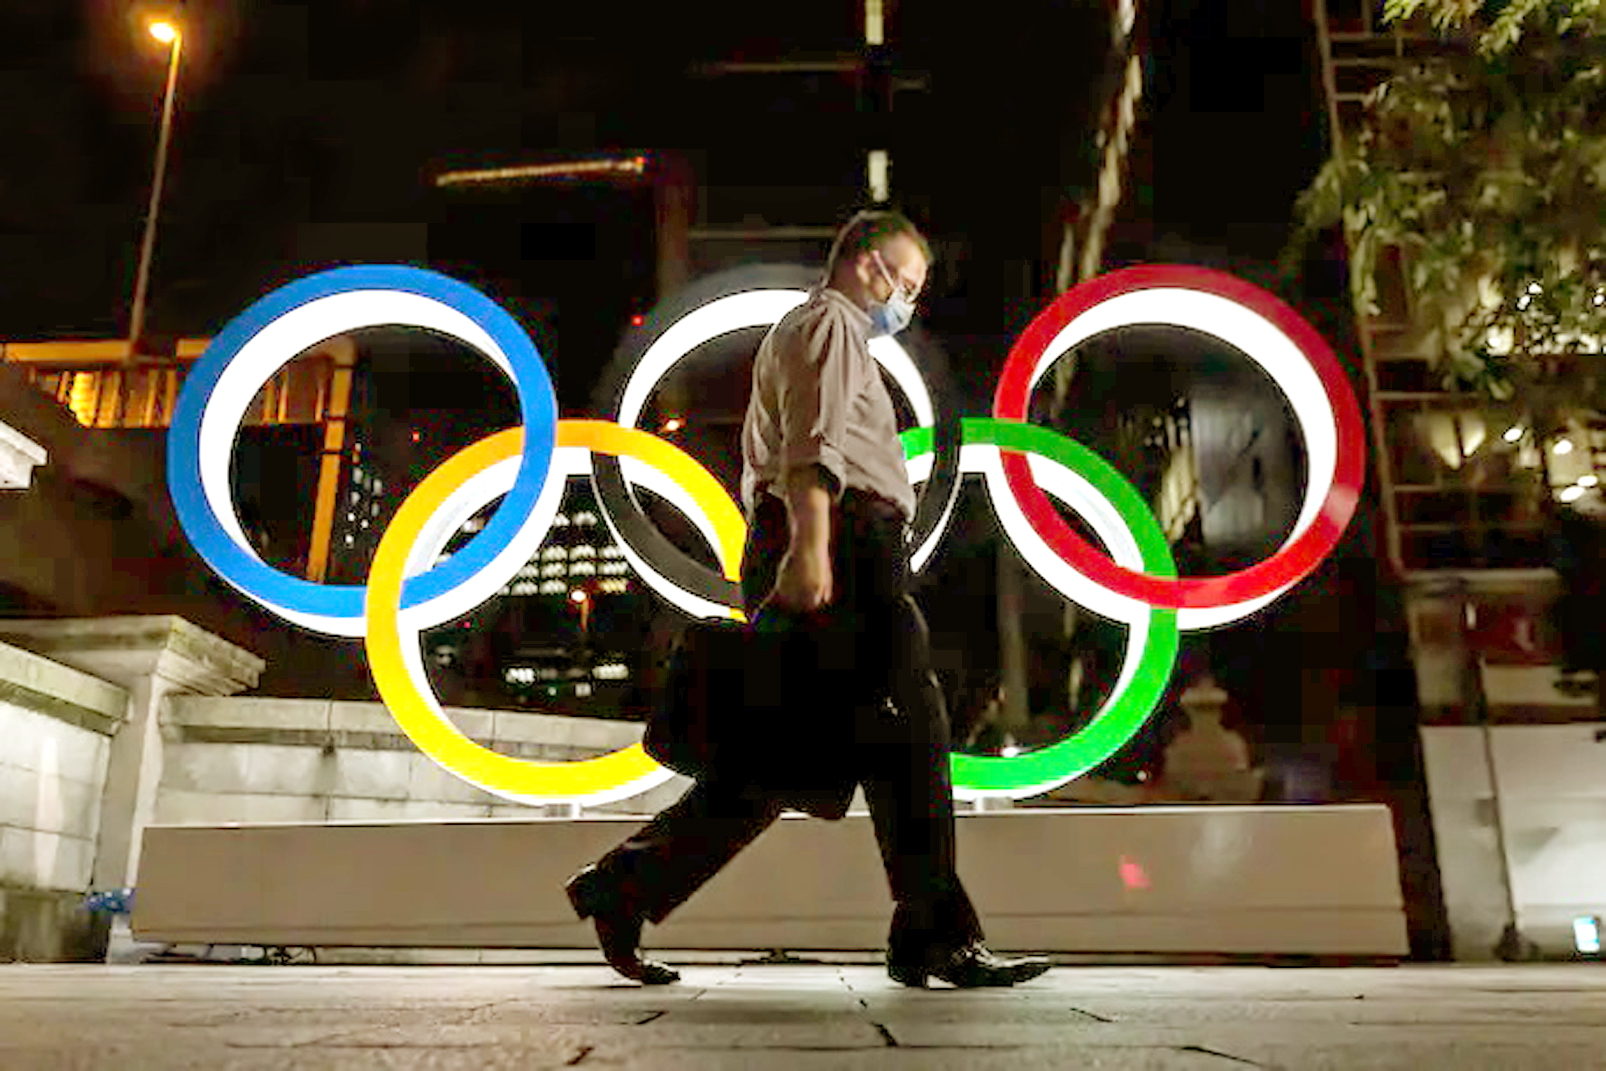 Thế vận hội Tokyo đã ghi nhận những ca vận động viên dương tính với COVID-19 - ẢNH: GETTY IMAGES